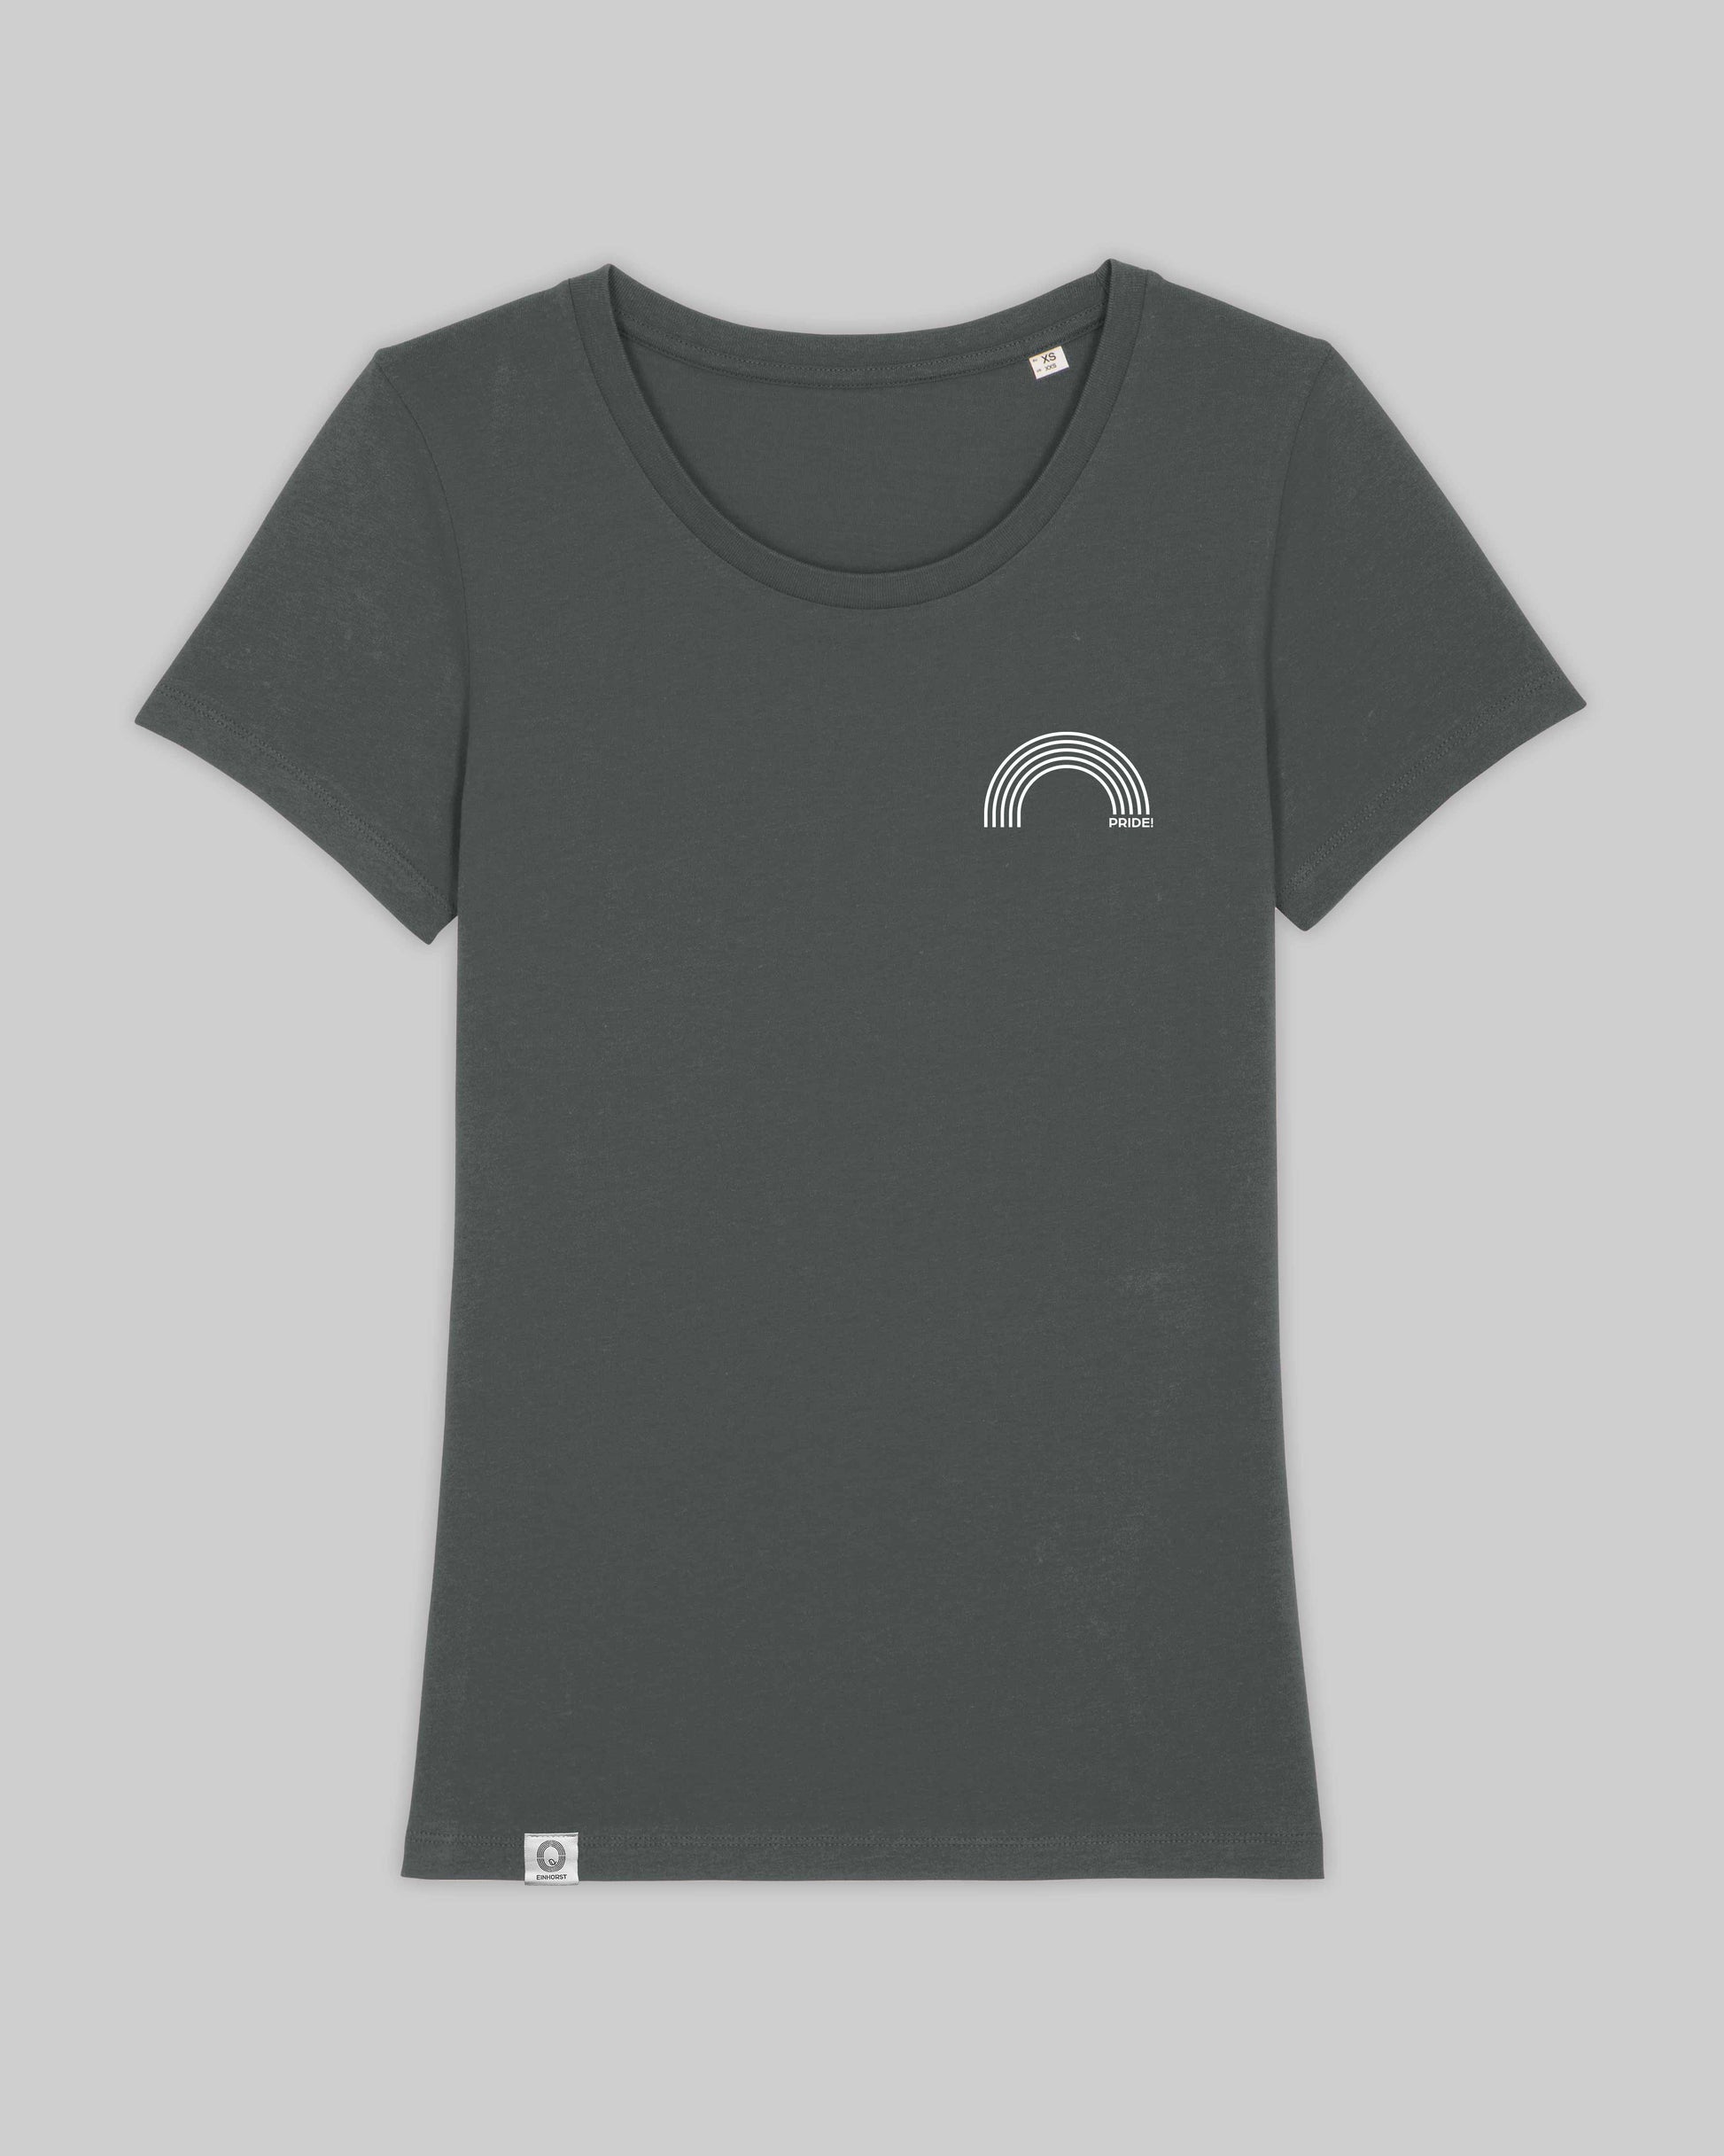 EINHORST® Organic Shirt tailliert in "Anthracite" mit dem Motiv "pride Regenbogen" in der Kombination weißer Regenbogen mit weißer Schrift, Bild von Shirt von vorne